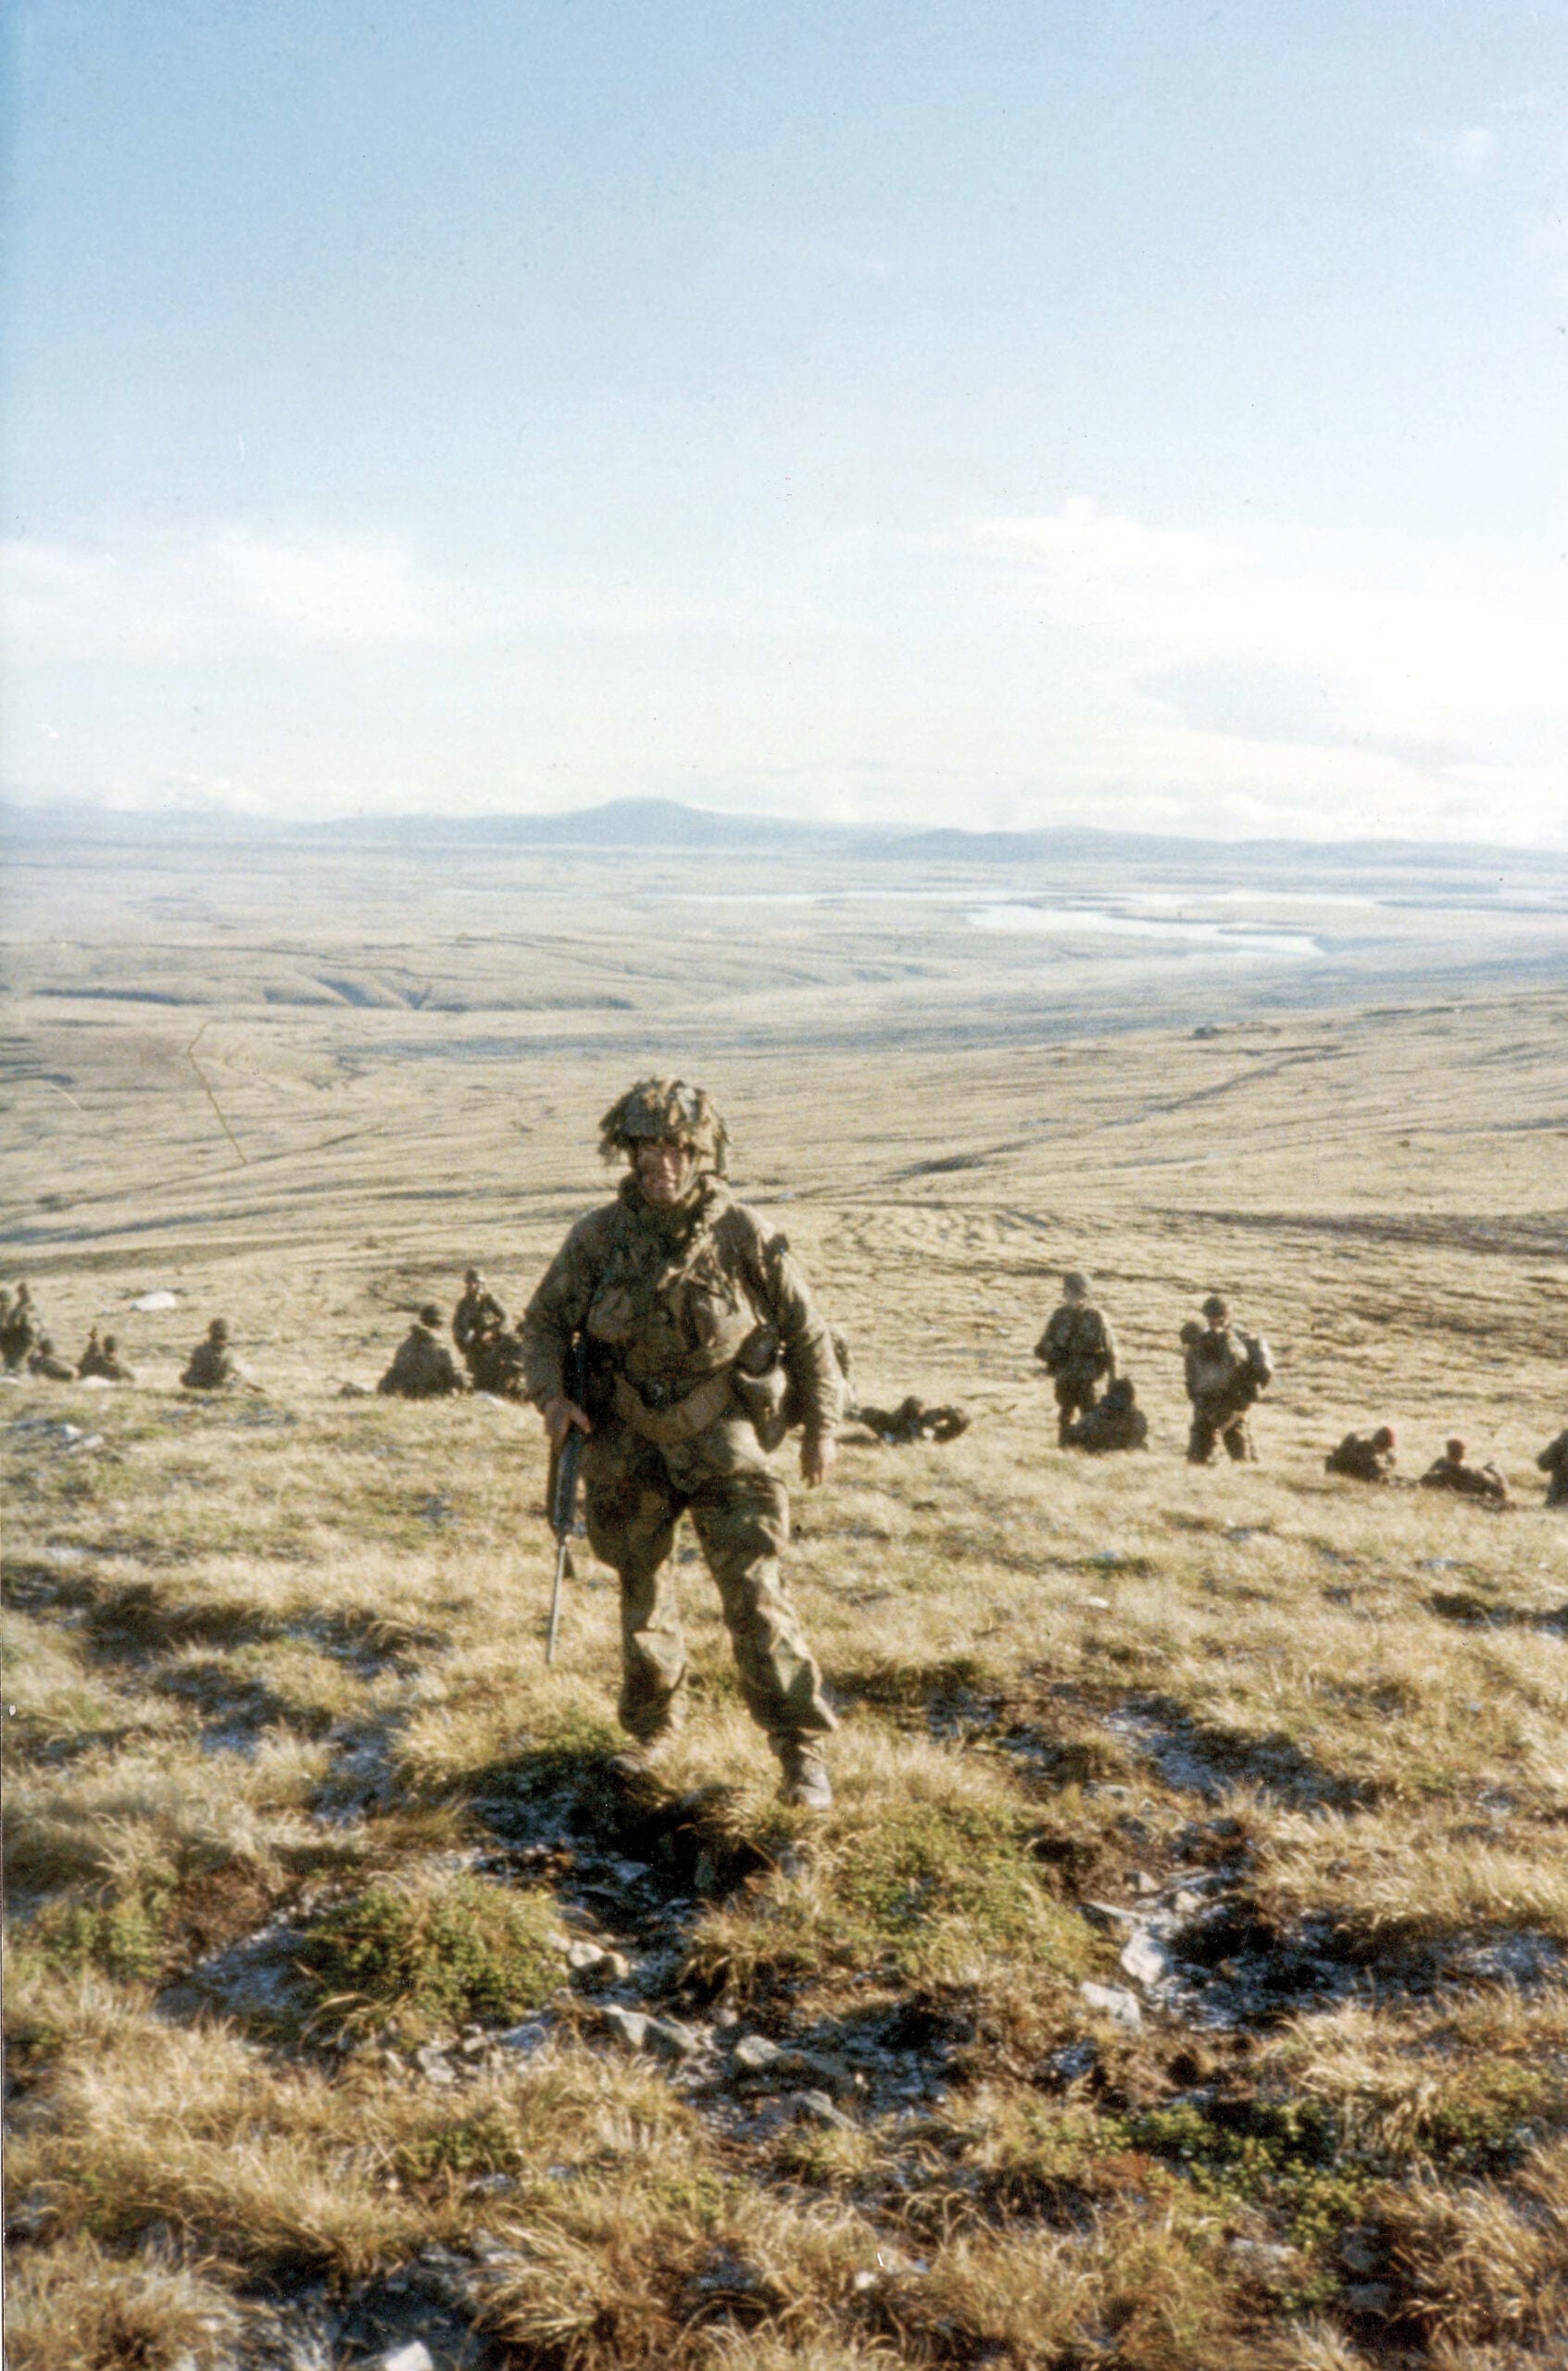 The Falklands War revisited